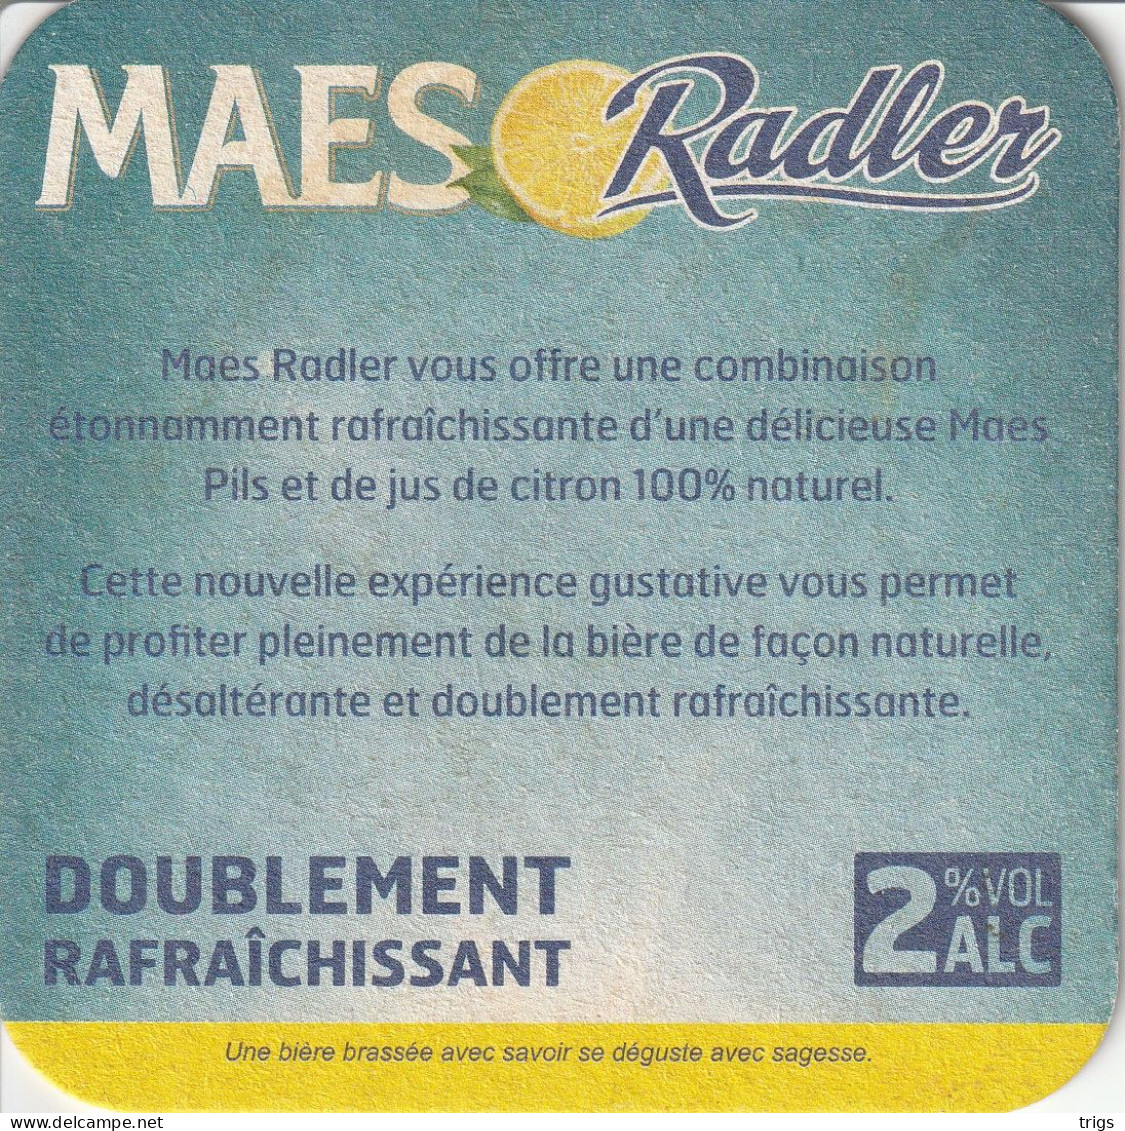 Maes Radler - Beer Mats